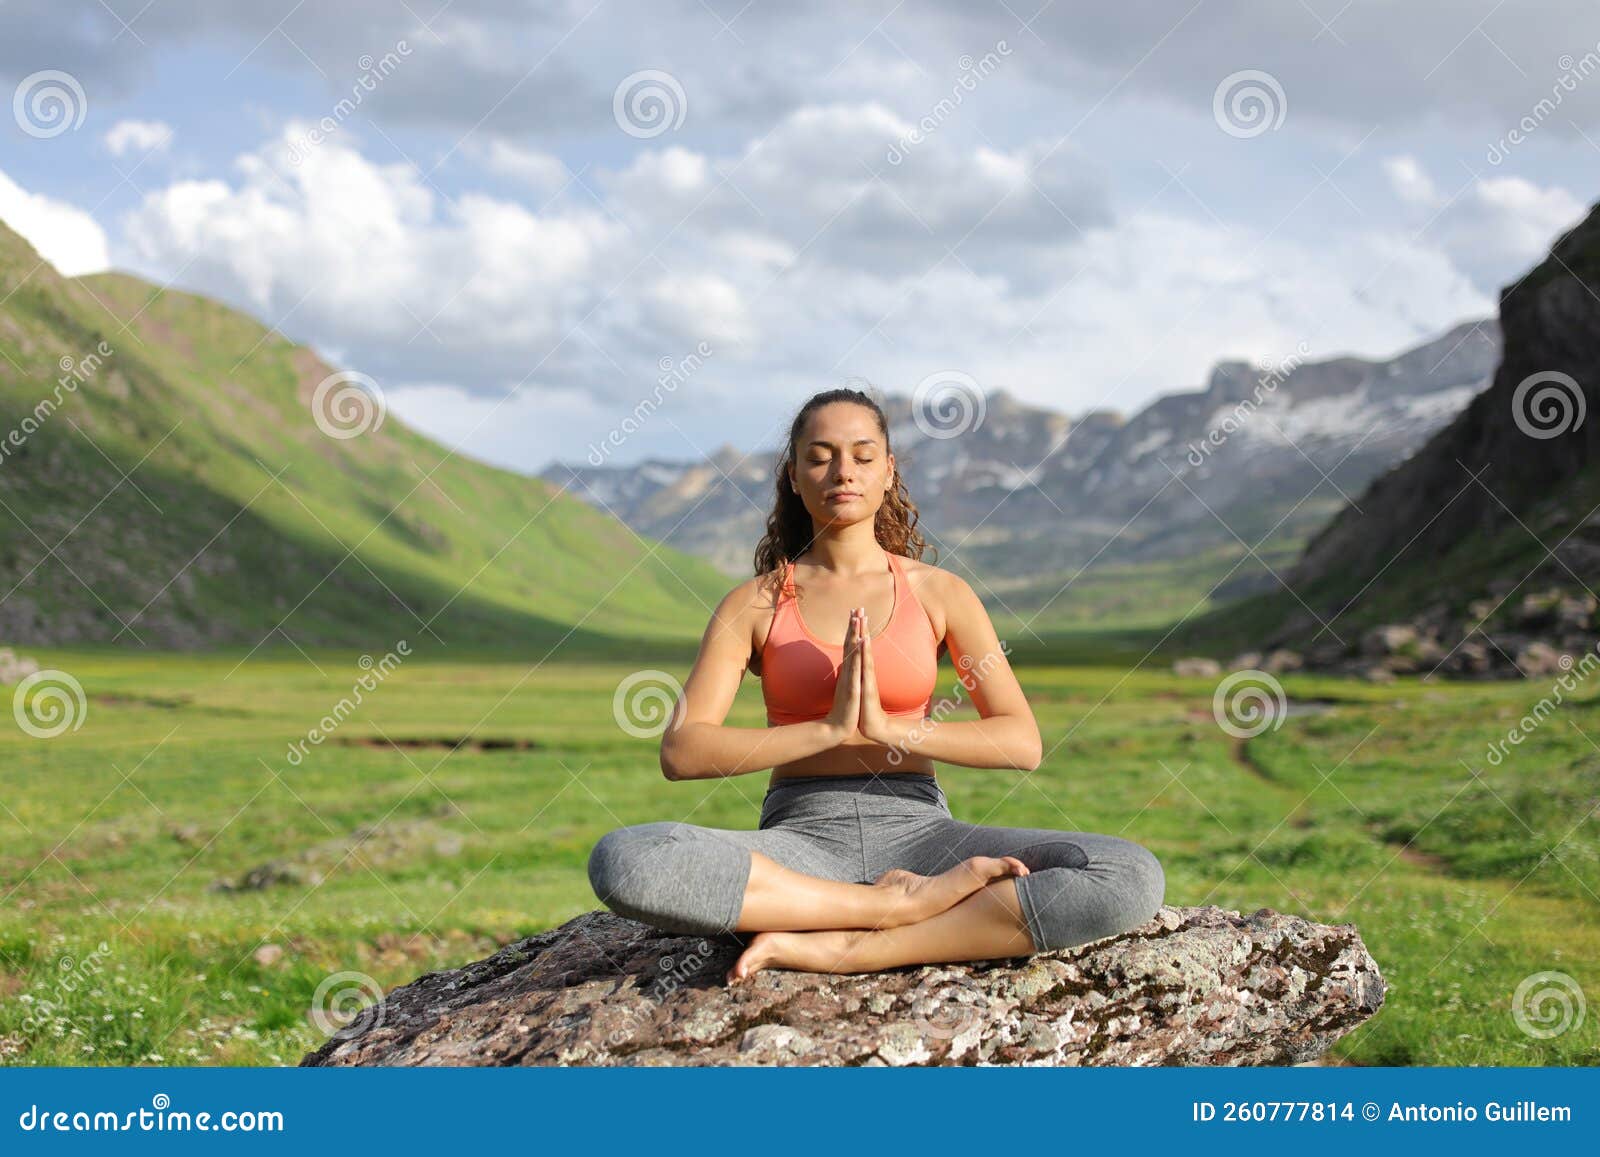 https://thumbs.dreamstime.com/z/mujer-agradeciendo-hacer-yoga-en-la-naturaleza-retrato-de-vista-frontal-una-ejercicios-260777814.jpg